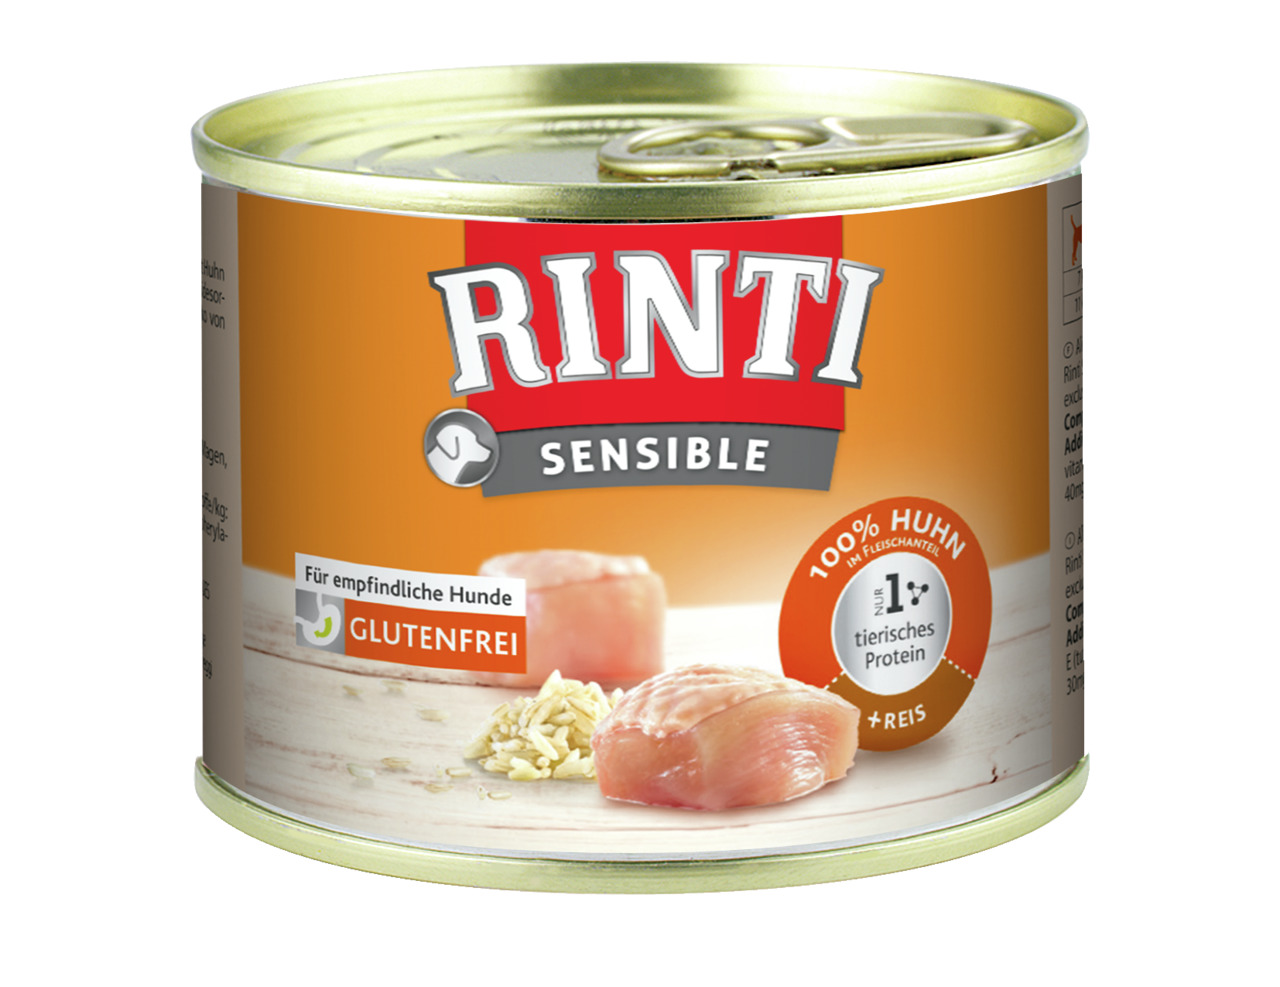 Sparpaket 6 x 185 g Rinti Sensible 100% Huhn + Reis Hunde Nassfutter